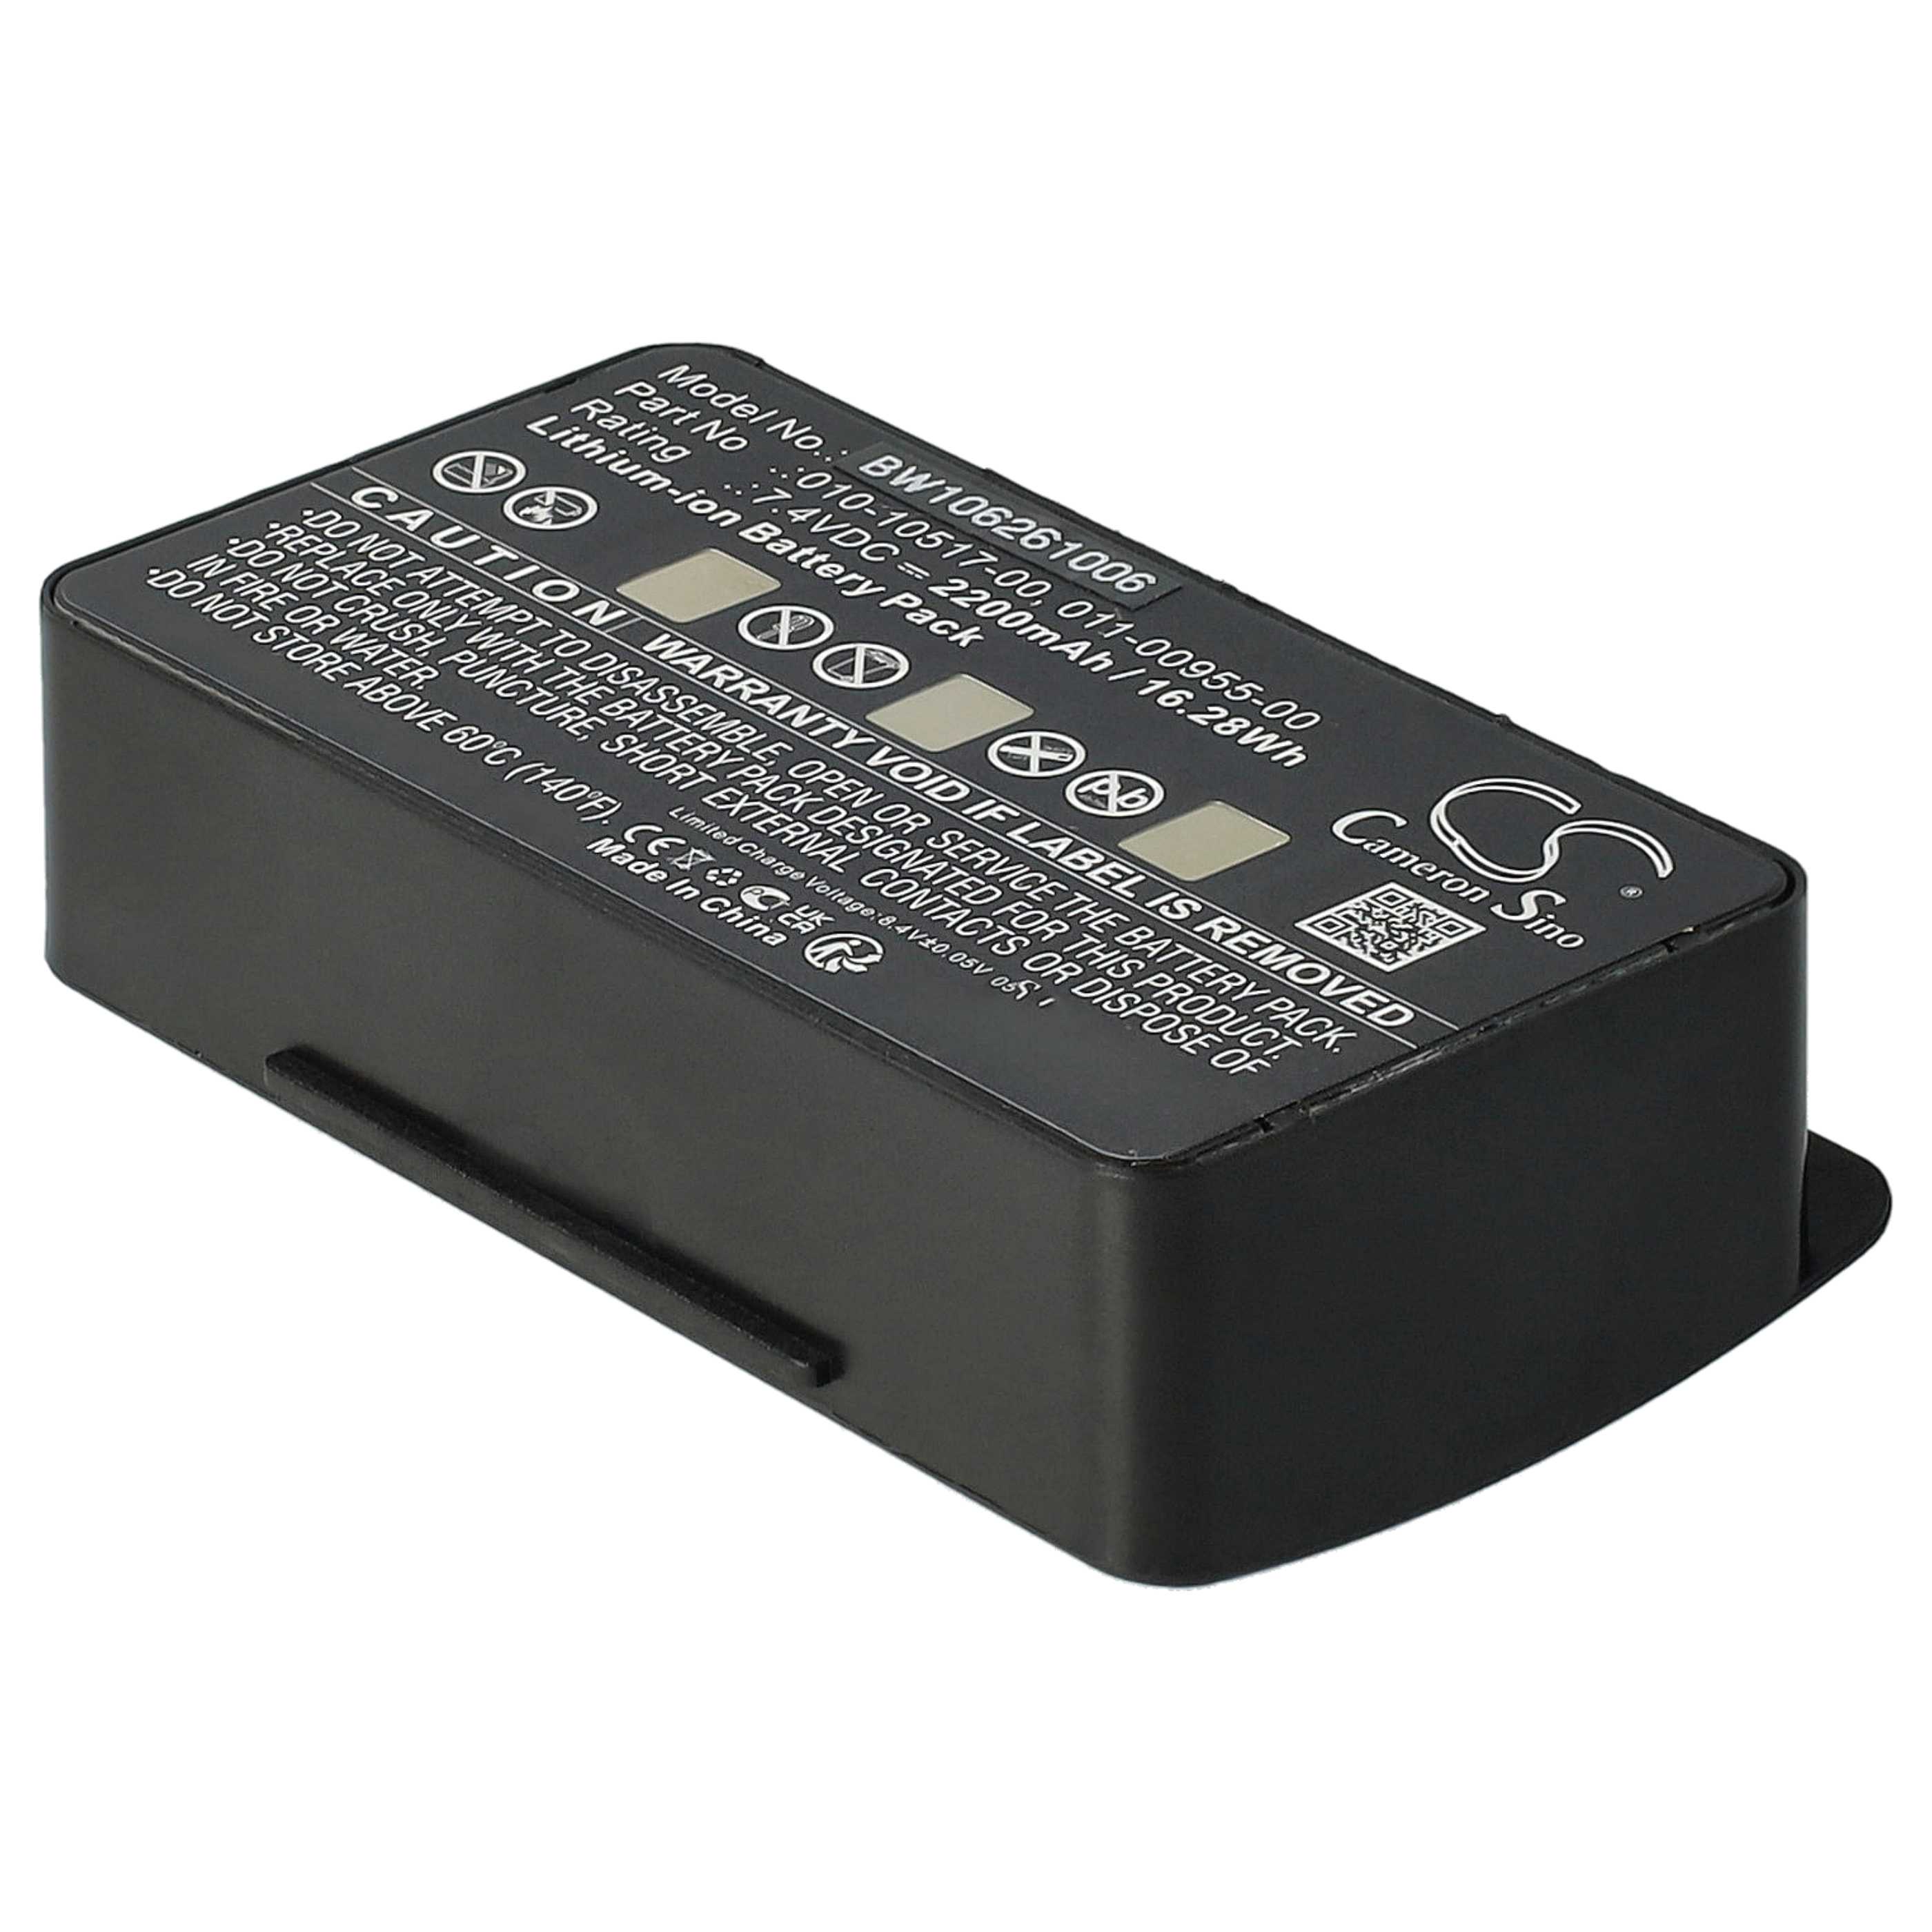 Batteria sostituisce Garmin 010-10517-00, 010-10517-01 per navigatore Garmin - 2200mAh 7,4V Li-Ion